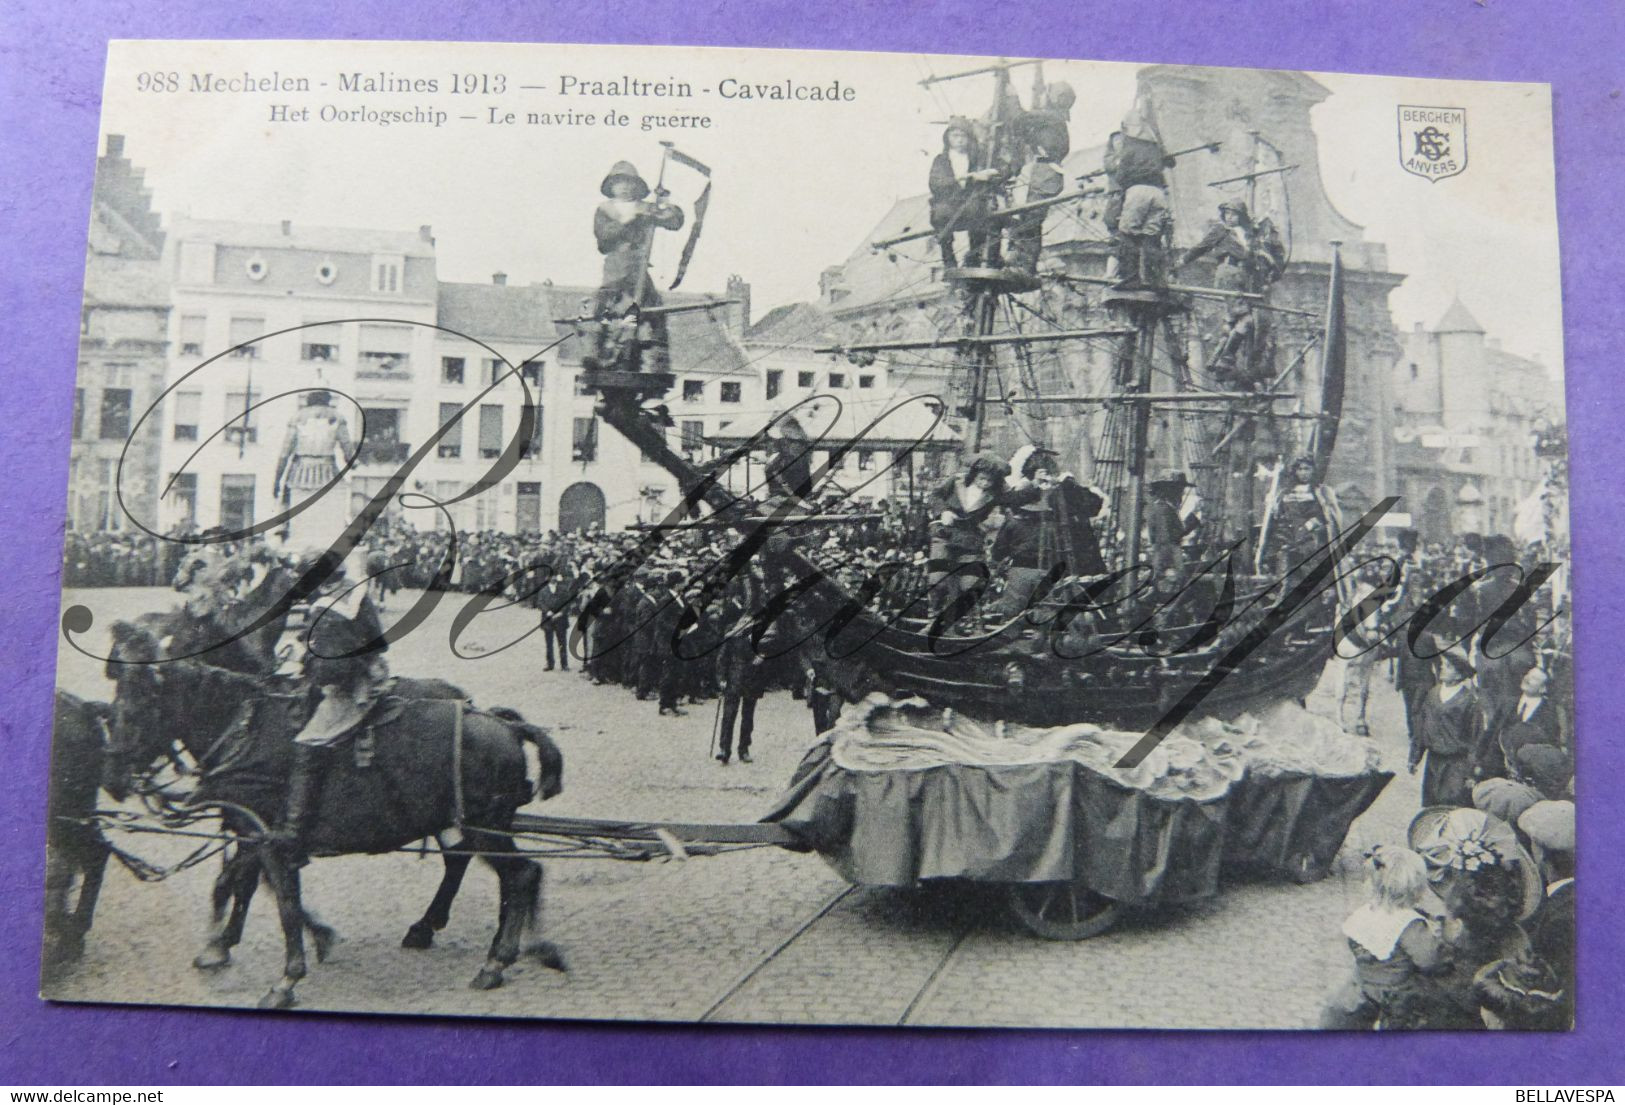 Mechelen 1913 Regionale Folklore stoet lot x 18 cpa  uitg. E.S. Berchem